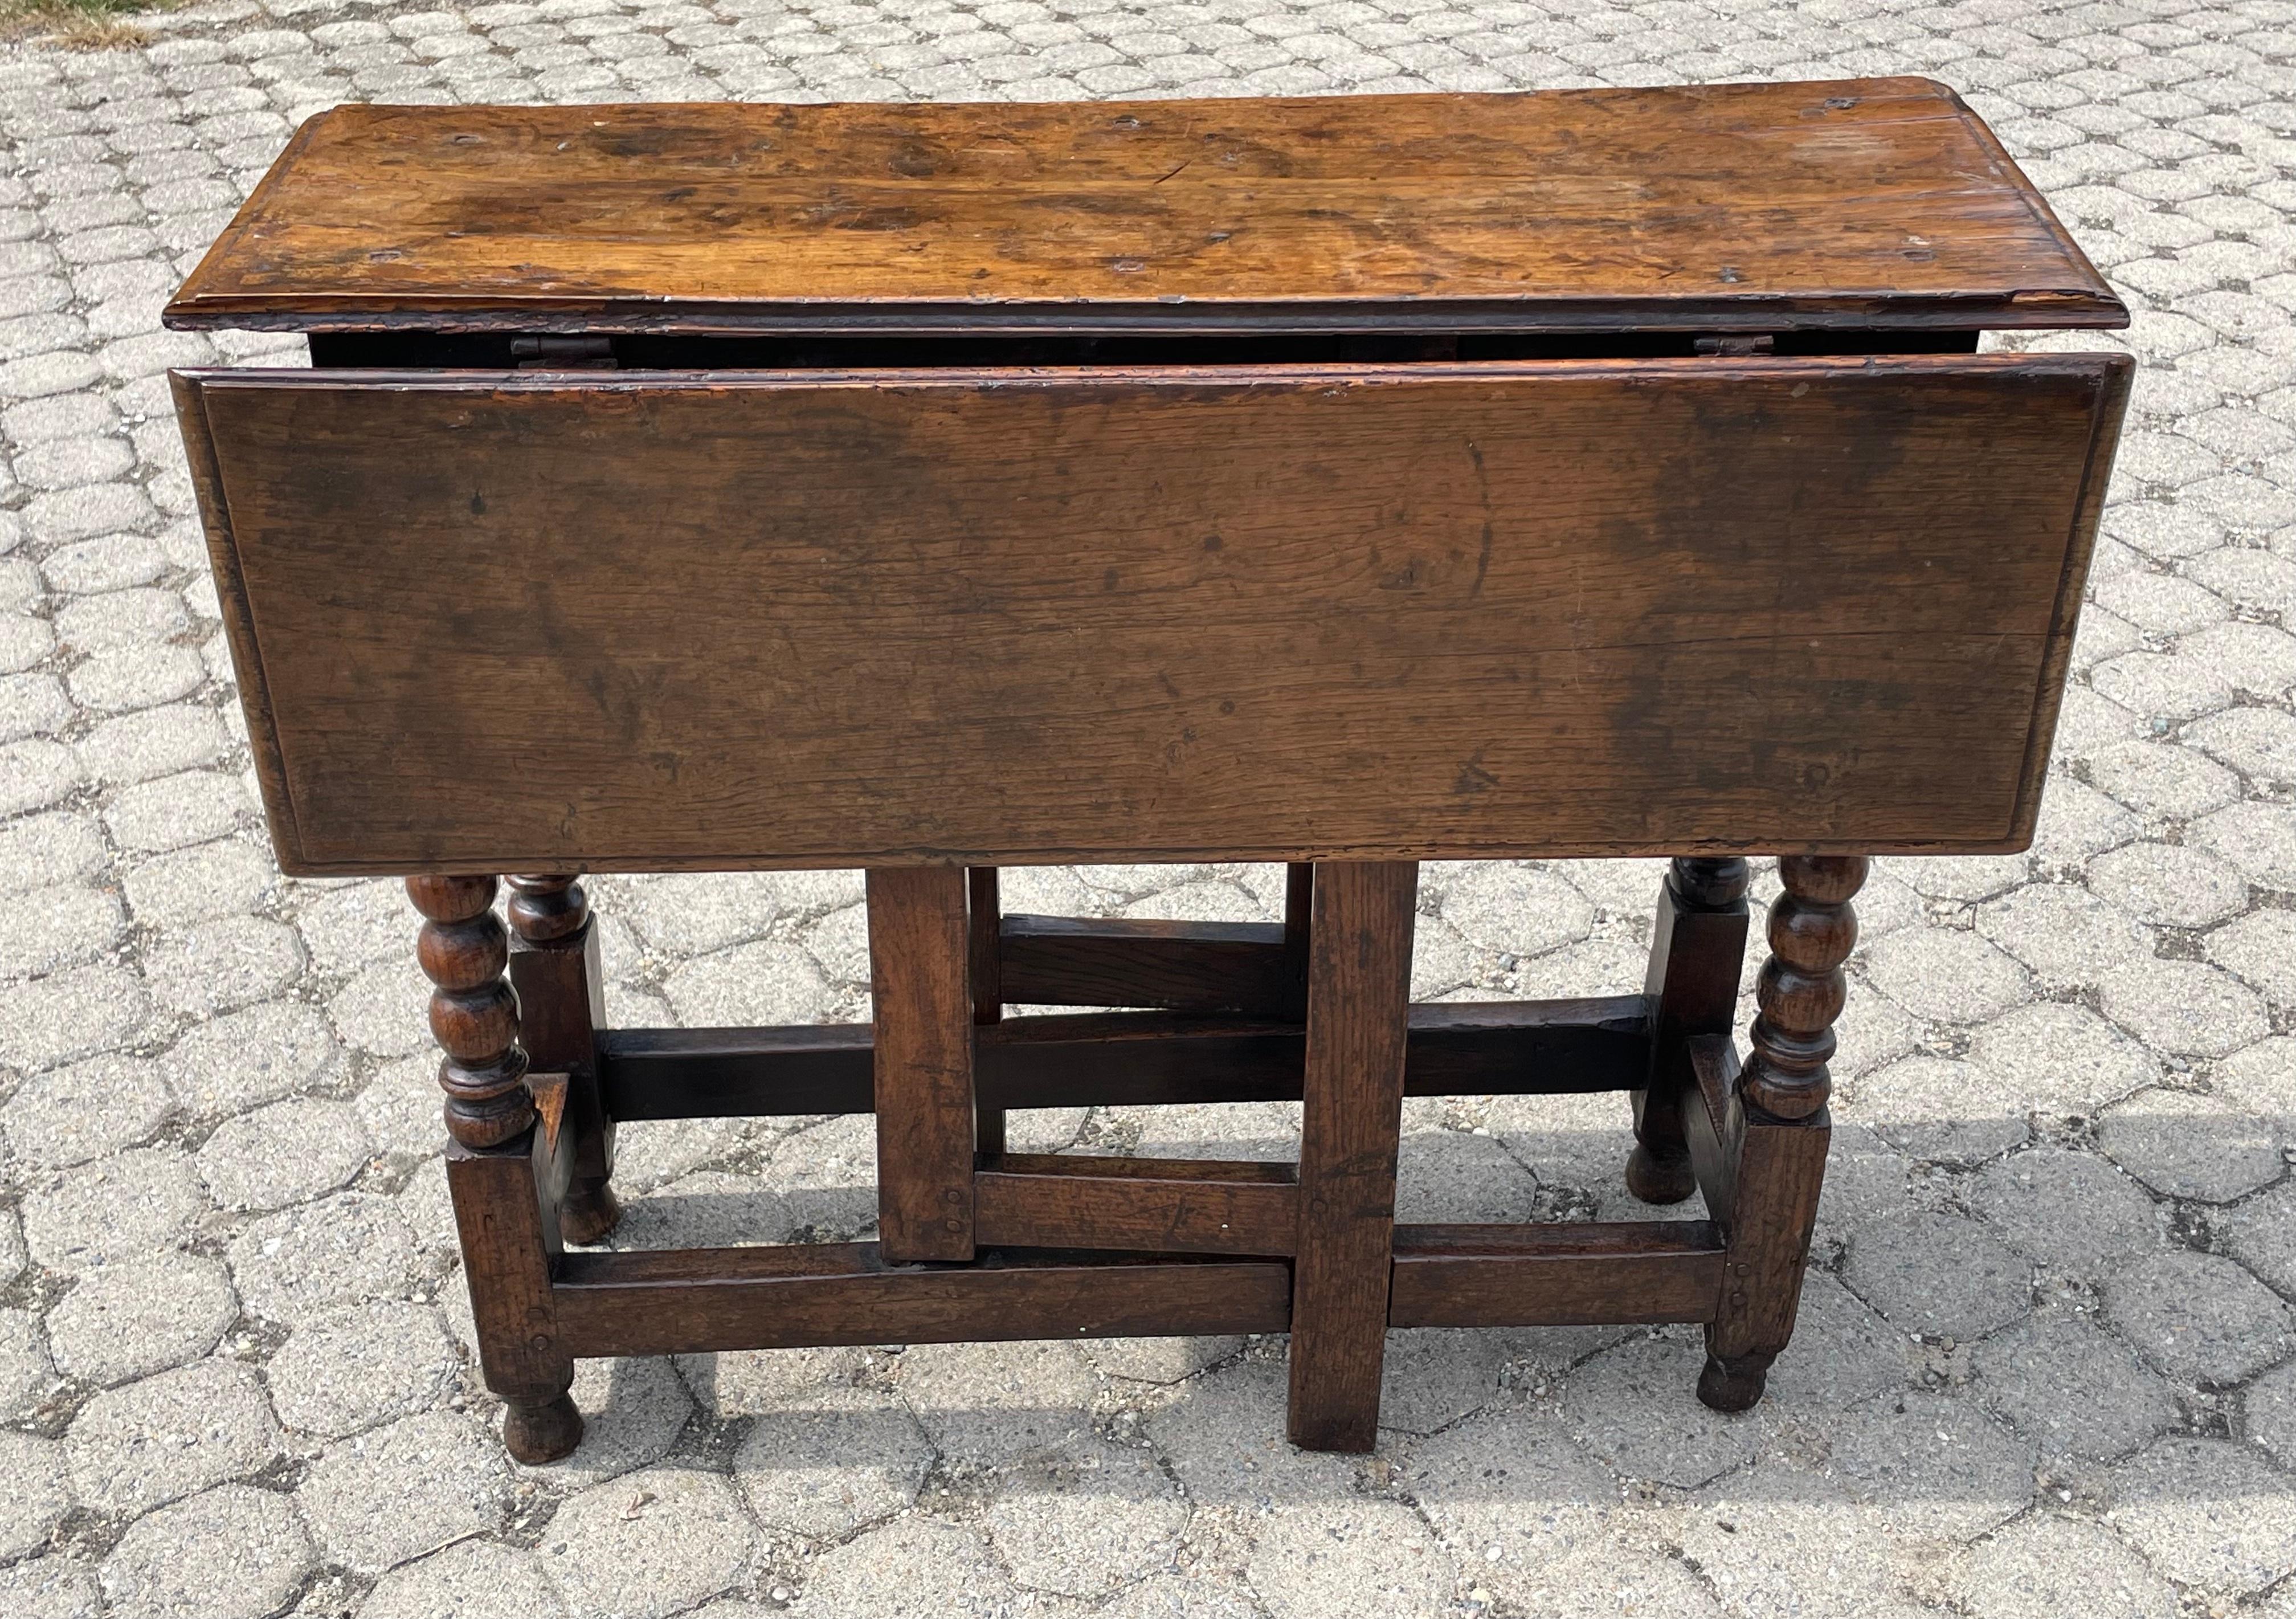 Eichenholztisch aus dem frühen 18. Jahrhundert mit kleinen Abmessungen.  Mit geschnitzten Klöppelbeinen und toller Farbe.  Das ungewöhnliche rechteckige Klappenelement deutet auf ein früheres Datum hin.  Maße 35,5 x 33,75 in geöffnetem Zustand.